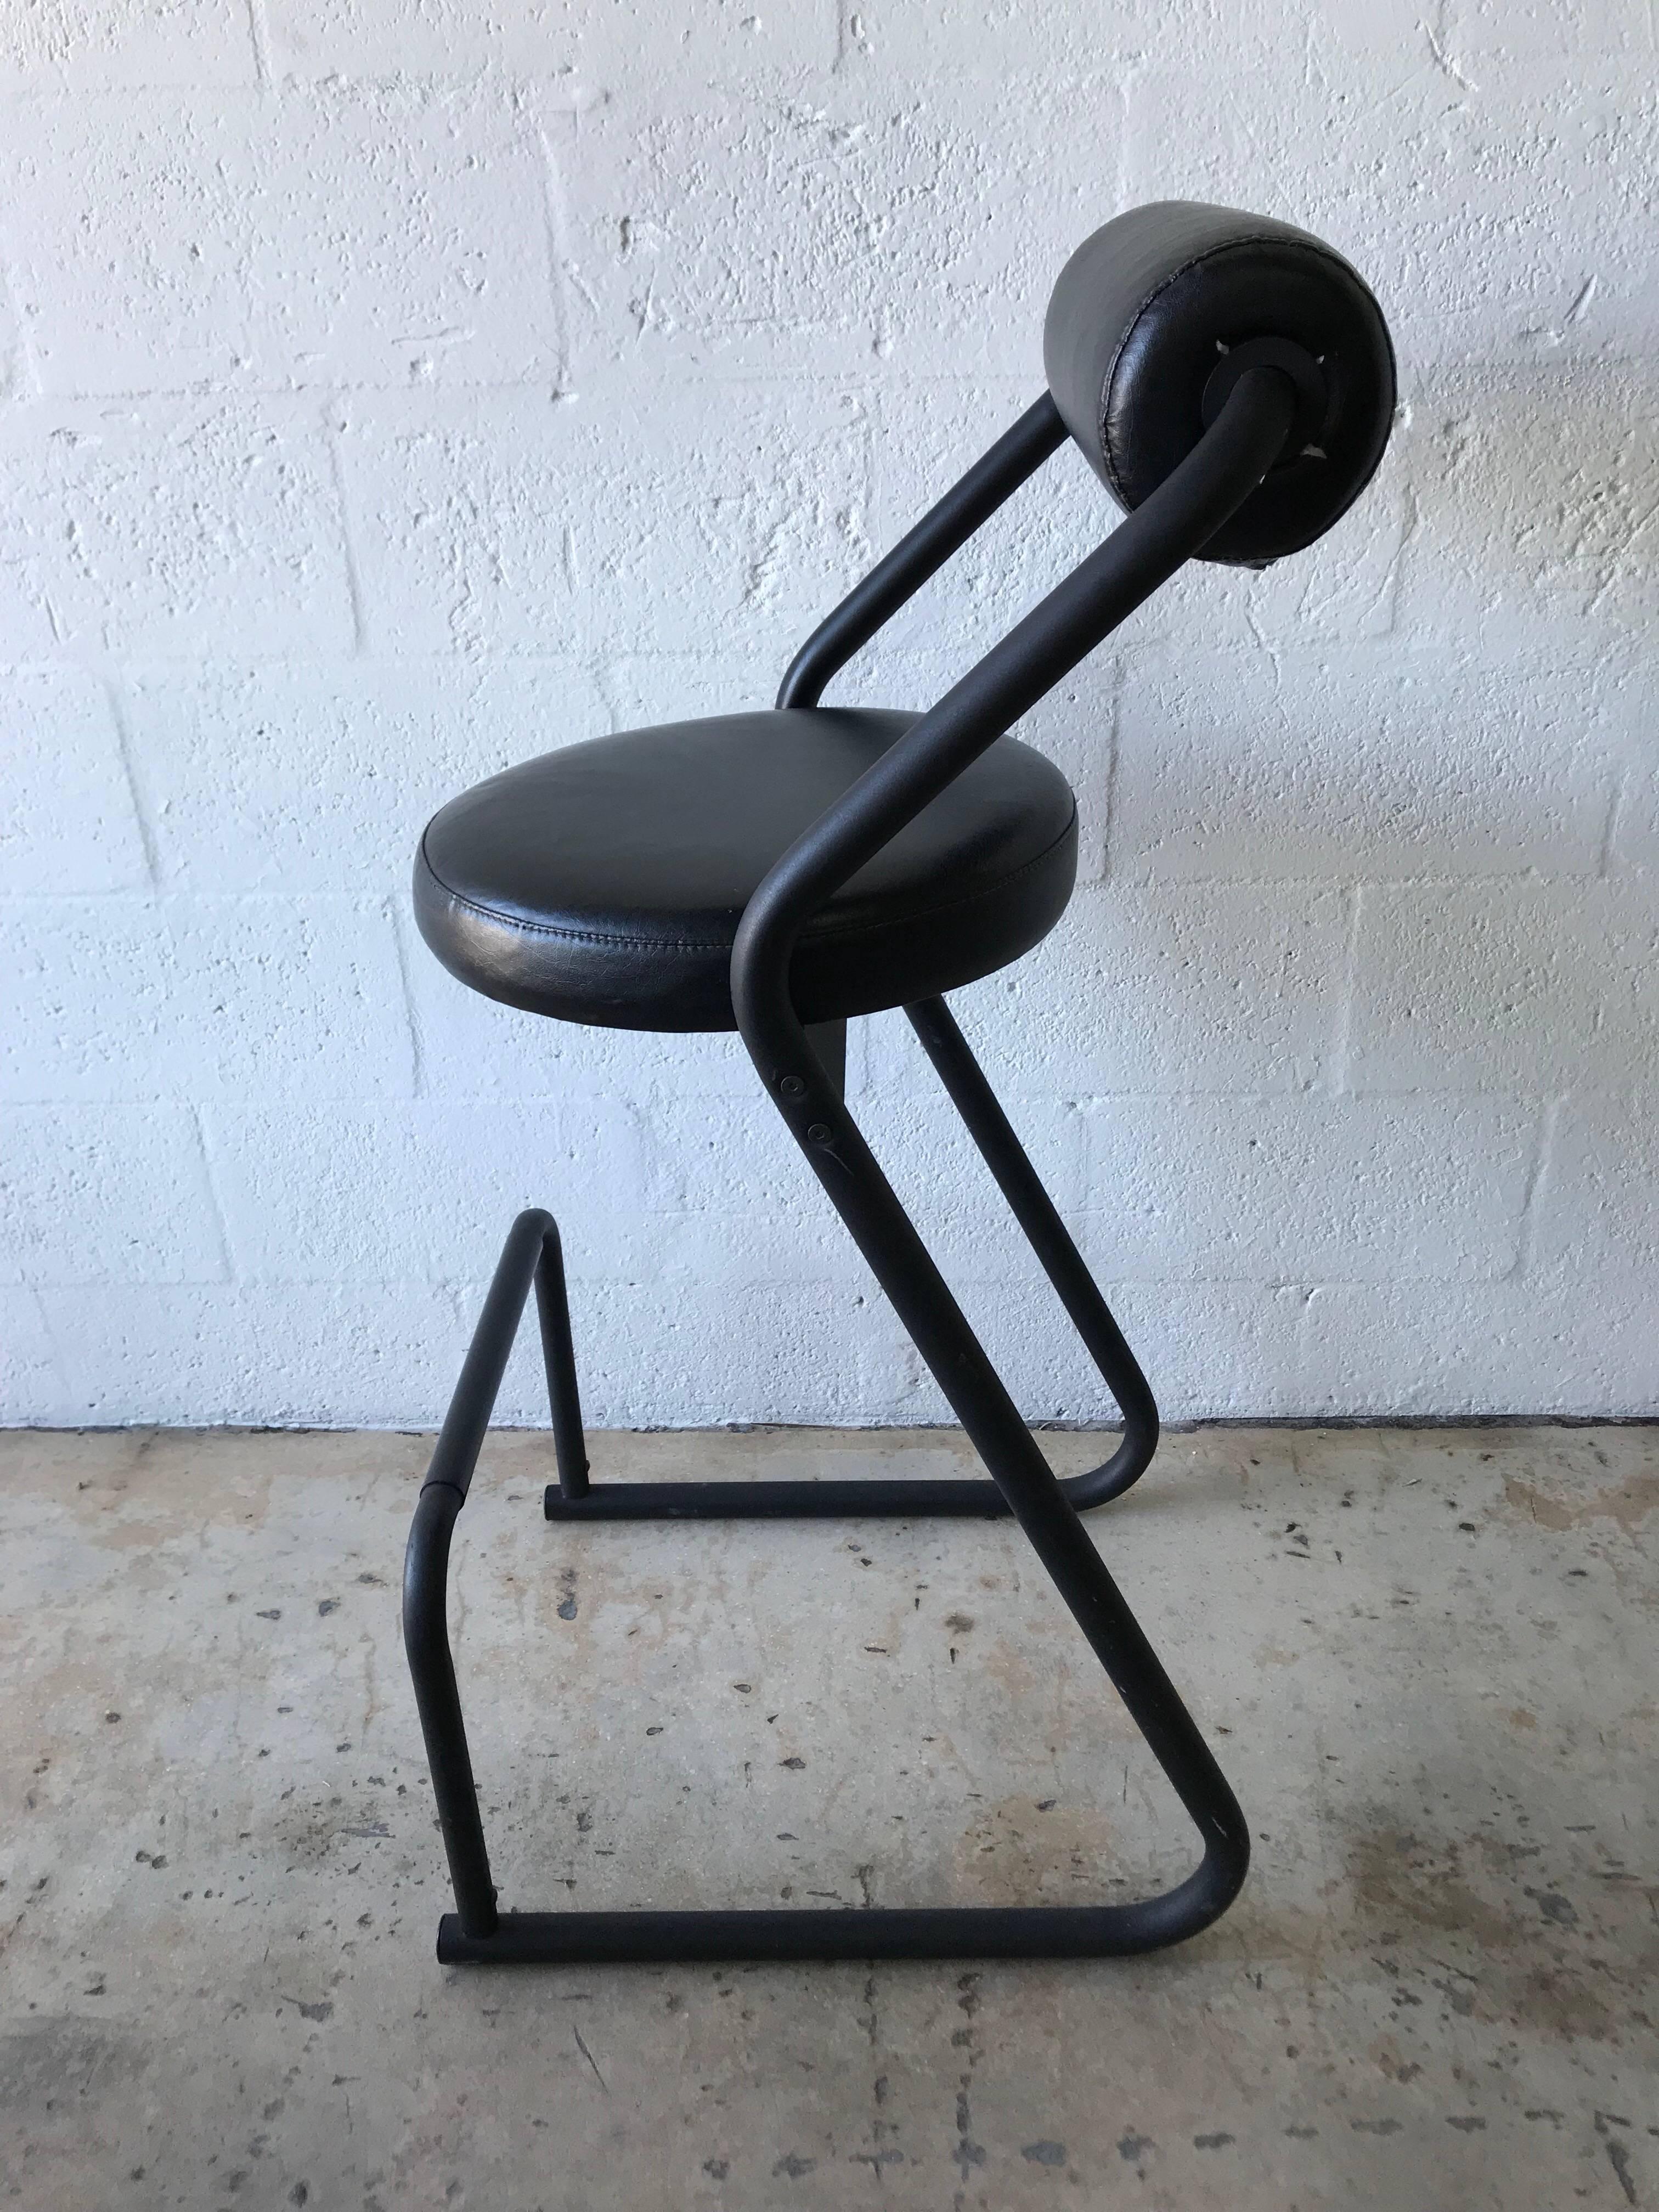 gibo creations chairs